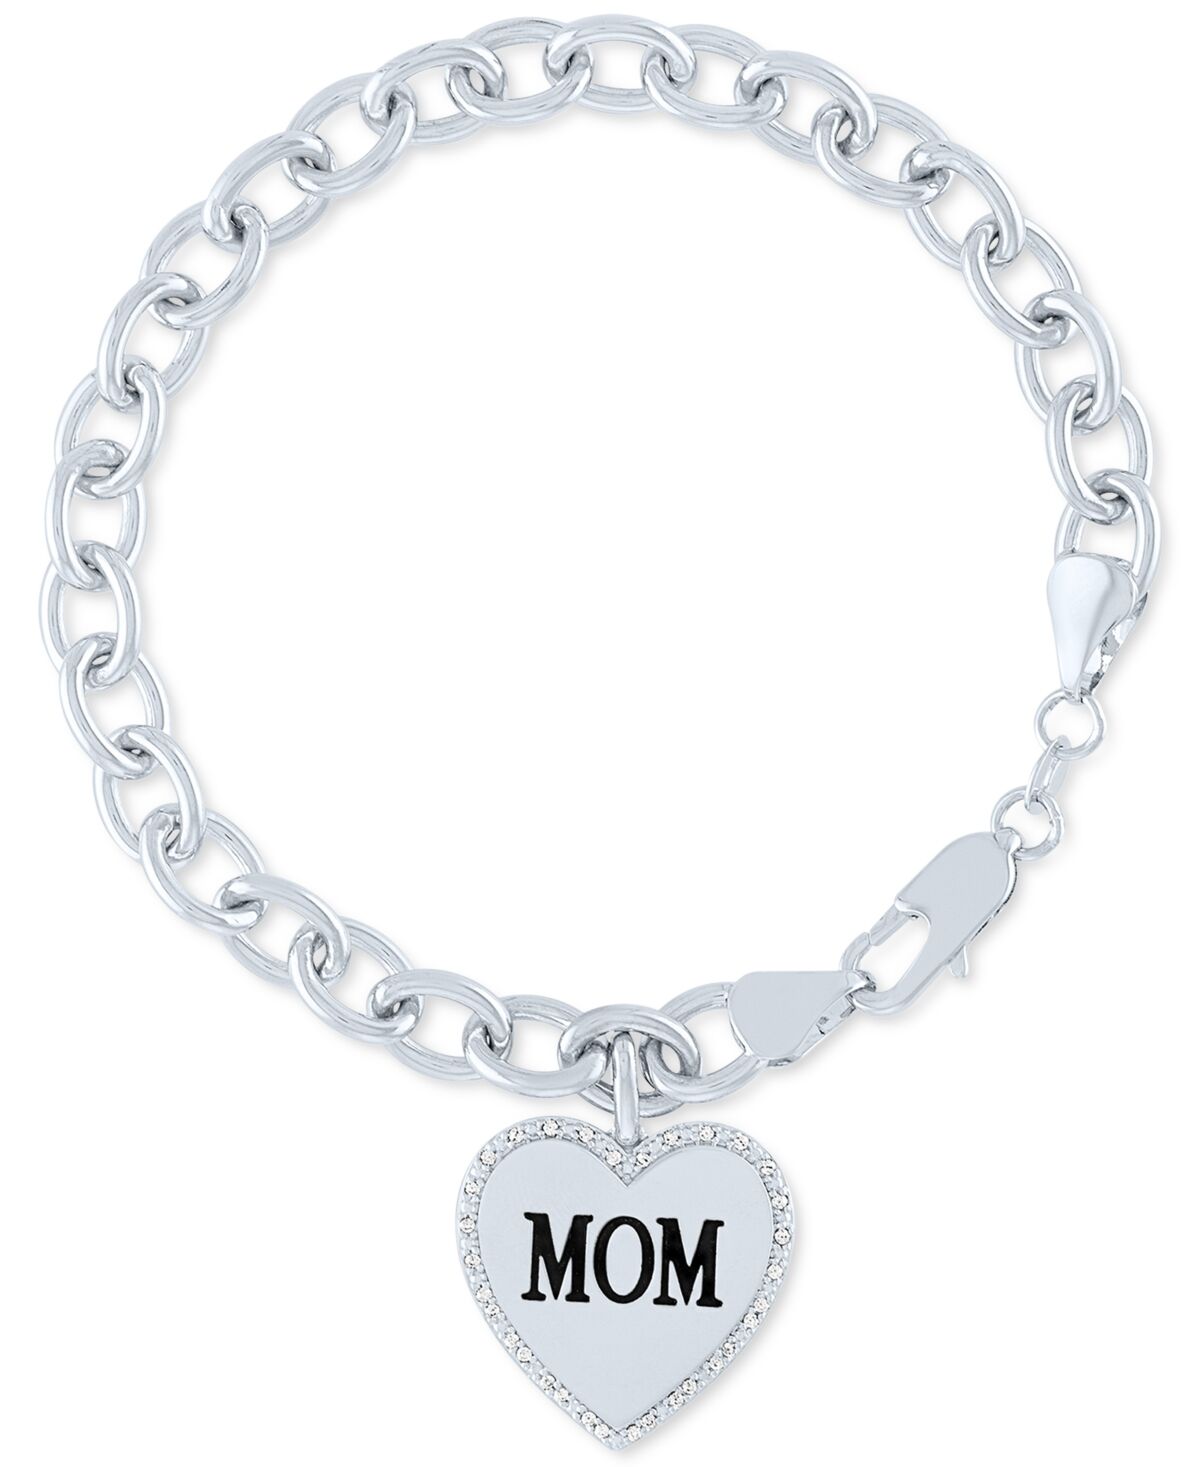 Macy's Diamond Mom Heart Charm Bracelet (1/10 ct. t.w.) in Sterling Silver - White